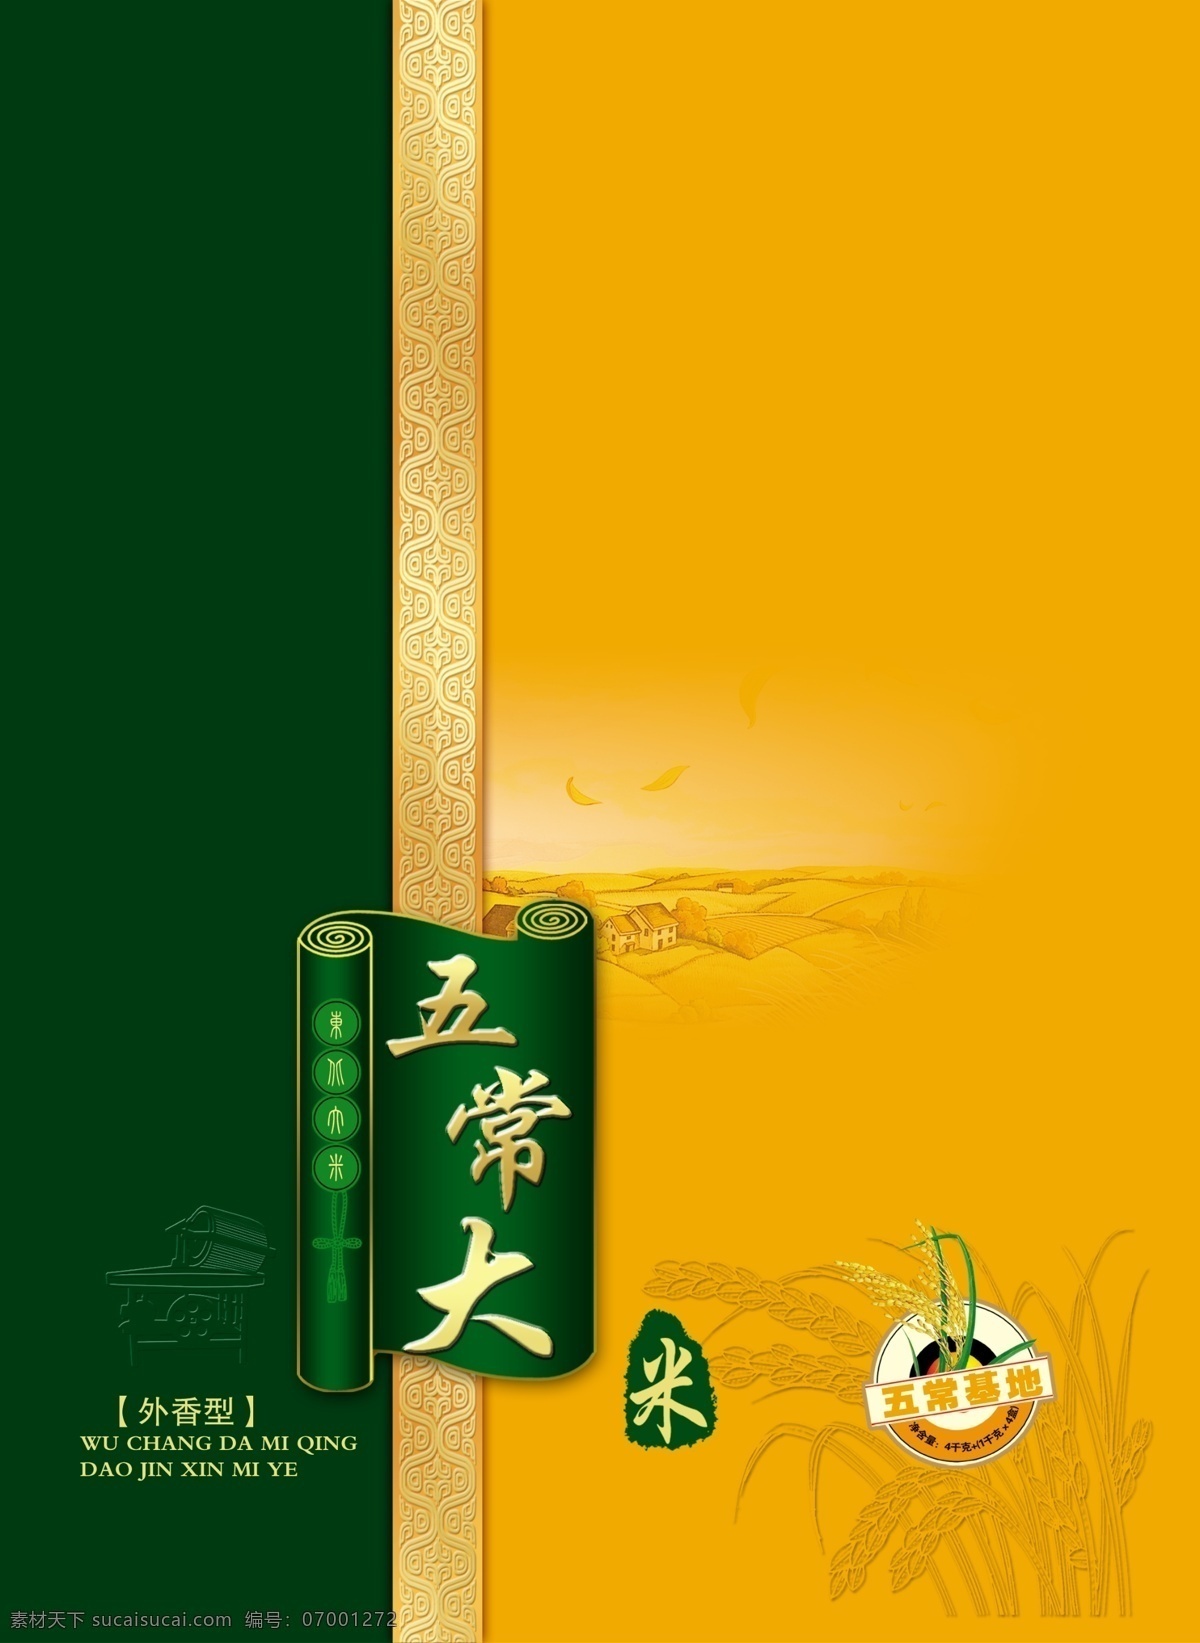 大米包装盒 稻穗 绿色 边框 包装设计 广告设计模板 源文件